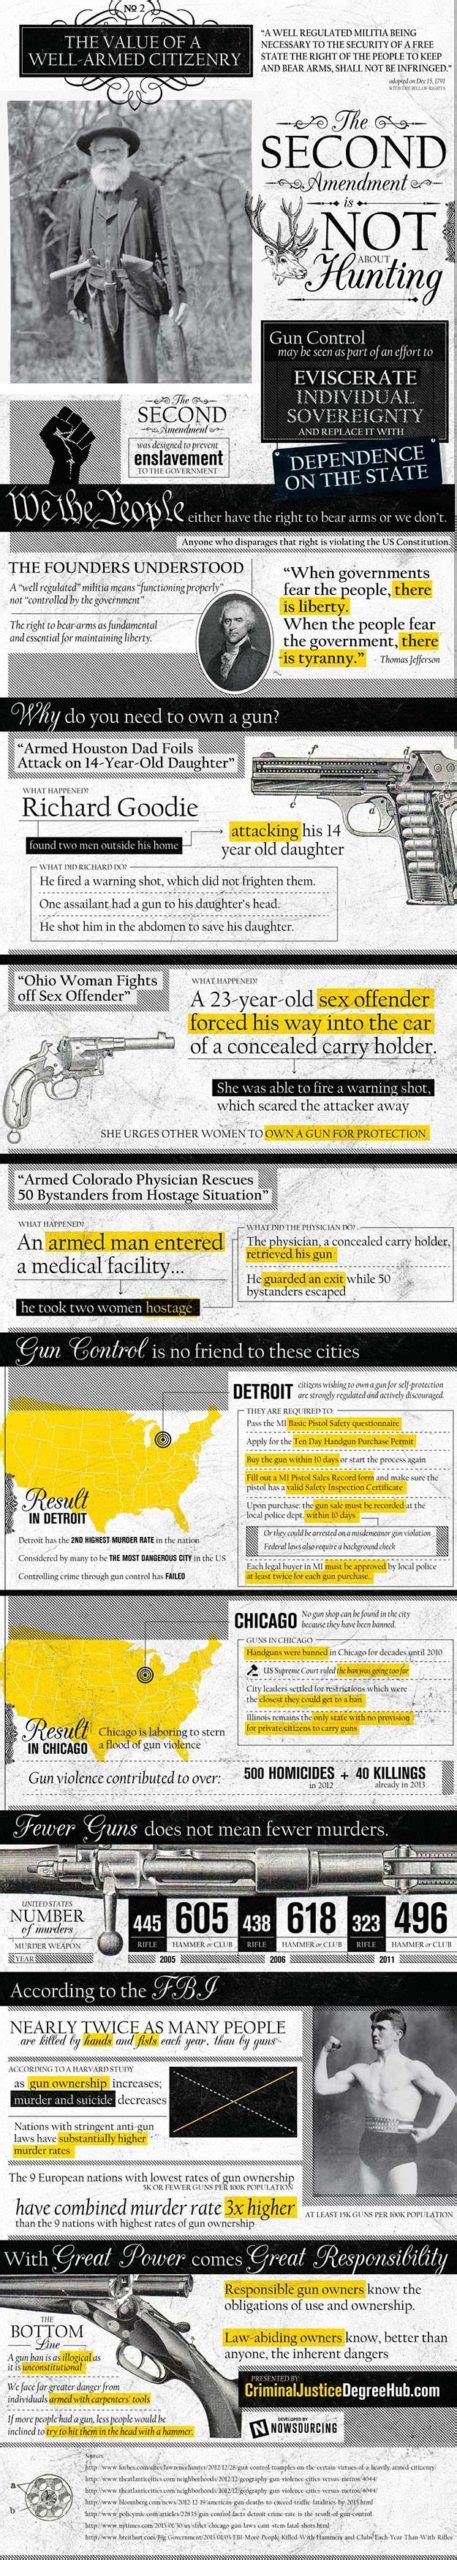 gun control facts inforgraphics on gun ownership